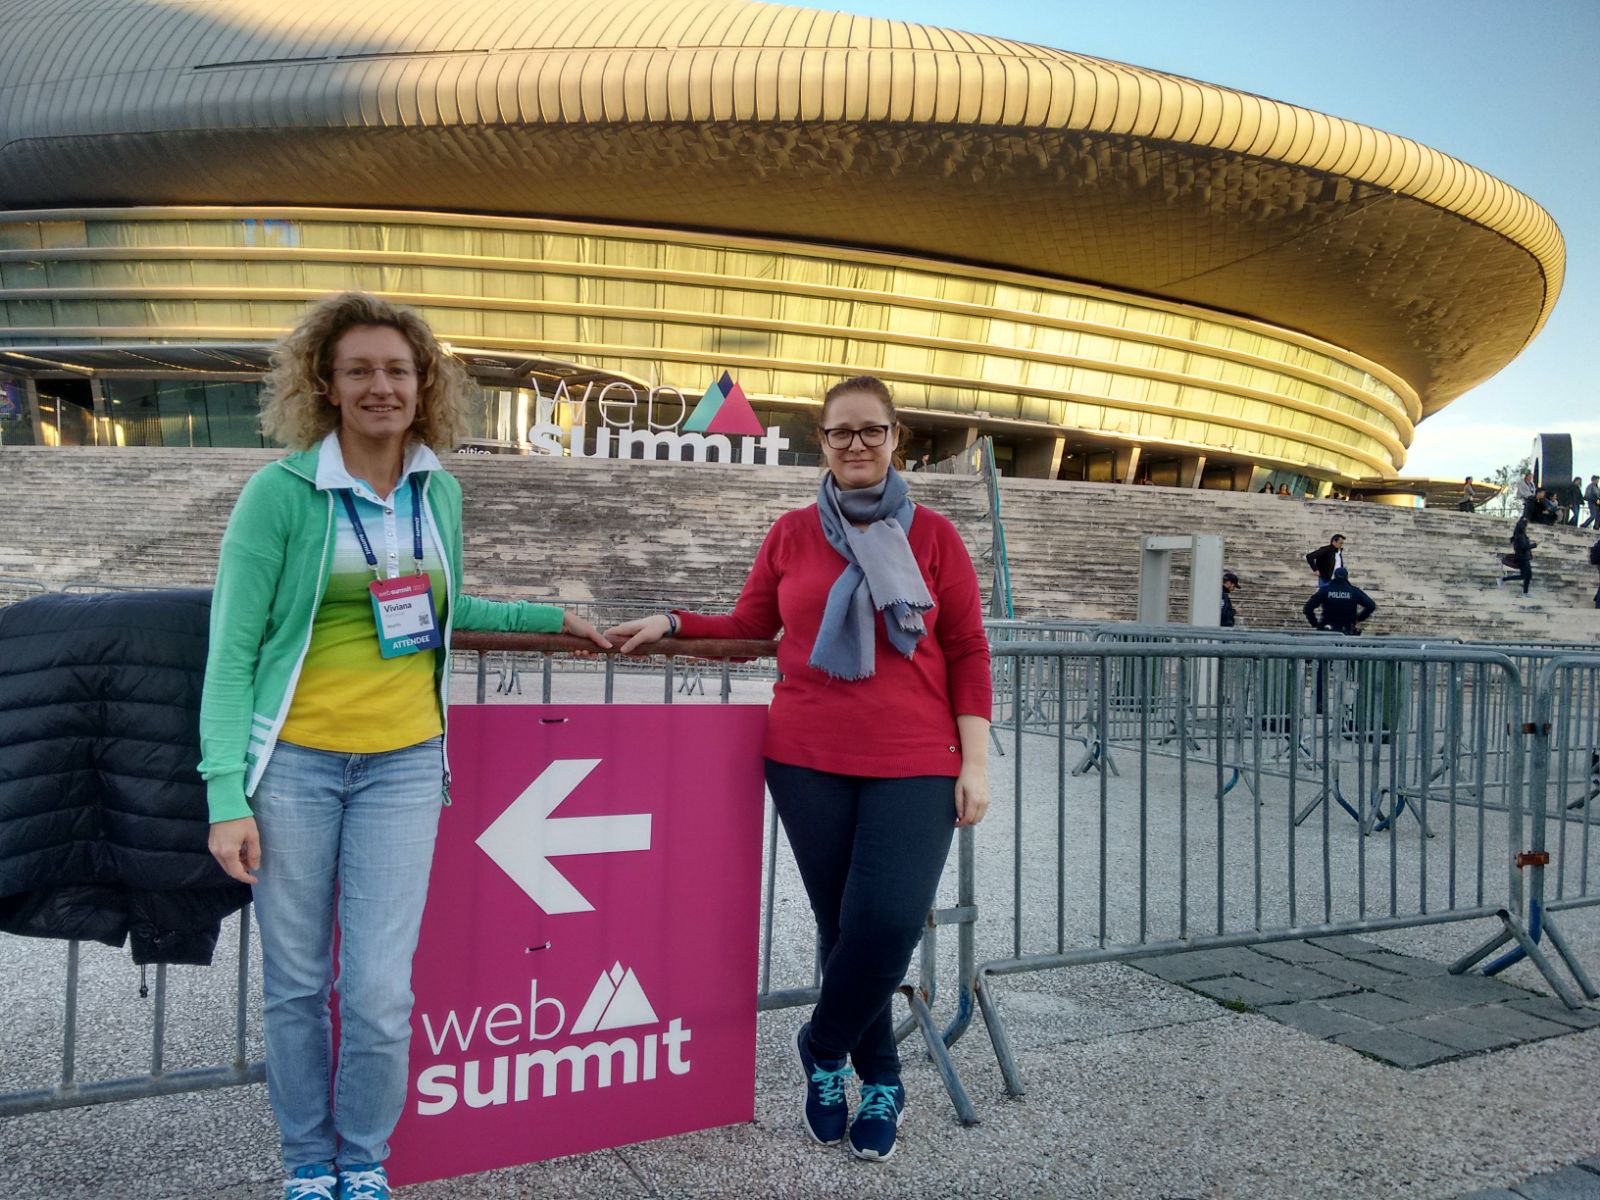 Viviana and Emanuela at Web Summit 2017